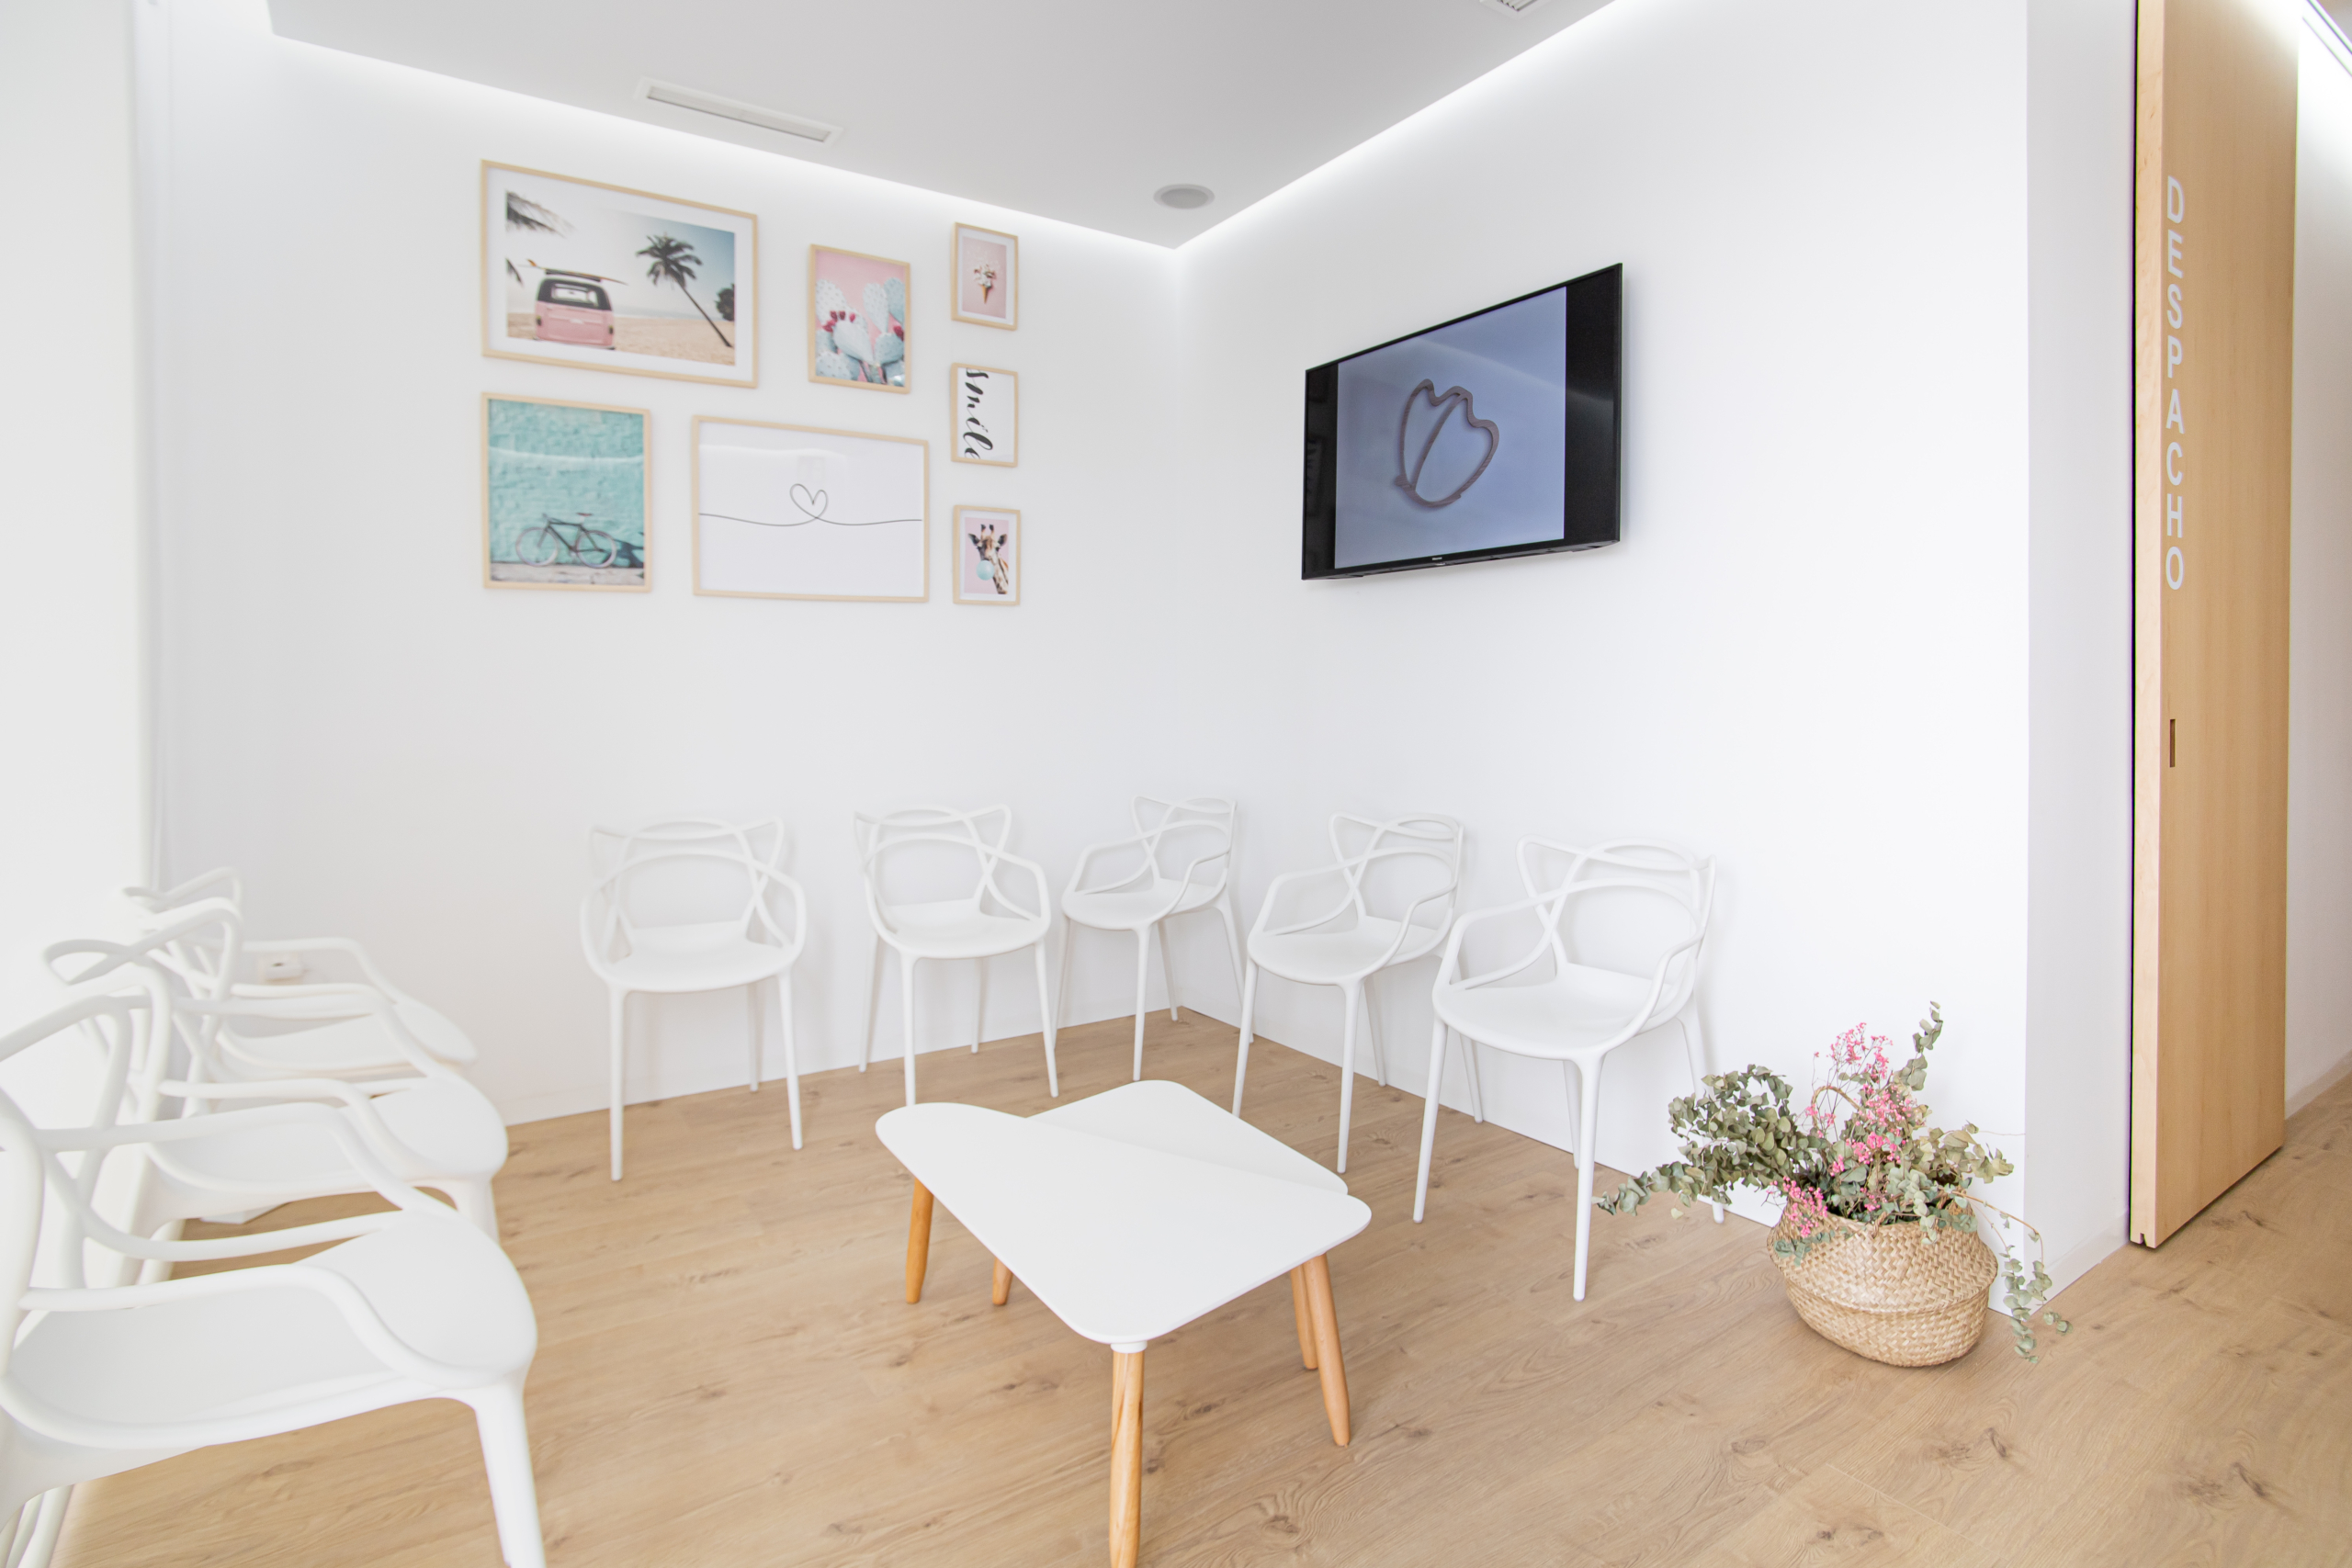 Sala de consulta con sillas con pantalla en la pared y acabado moderno en madera y en blanco